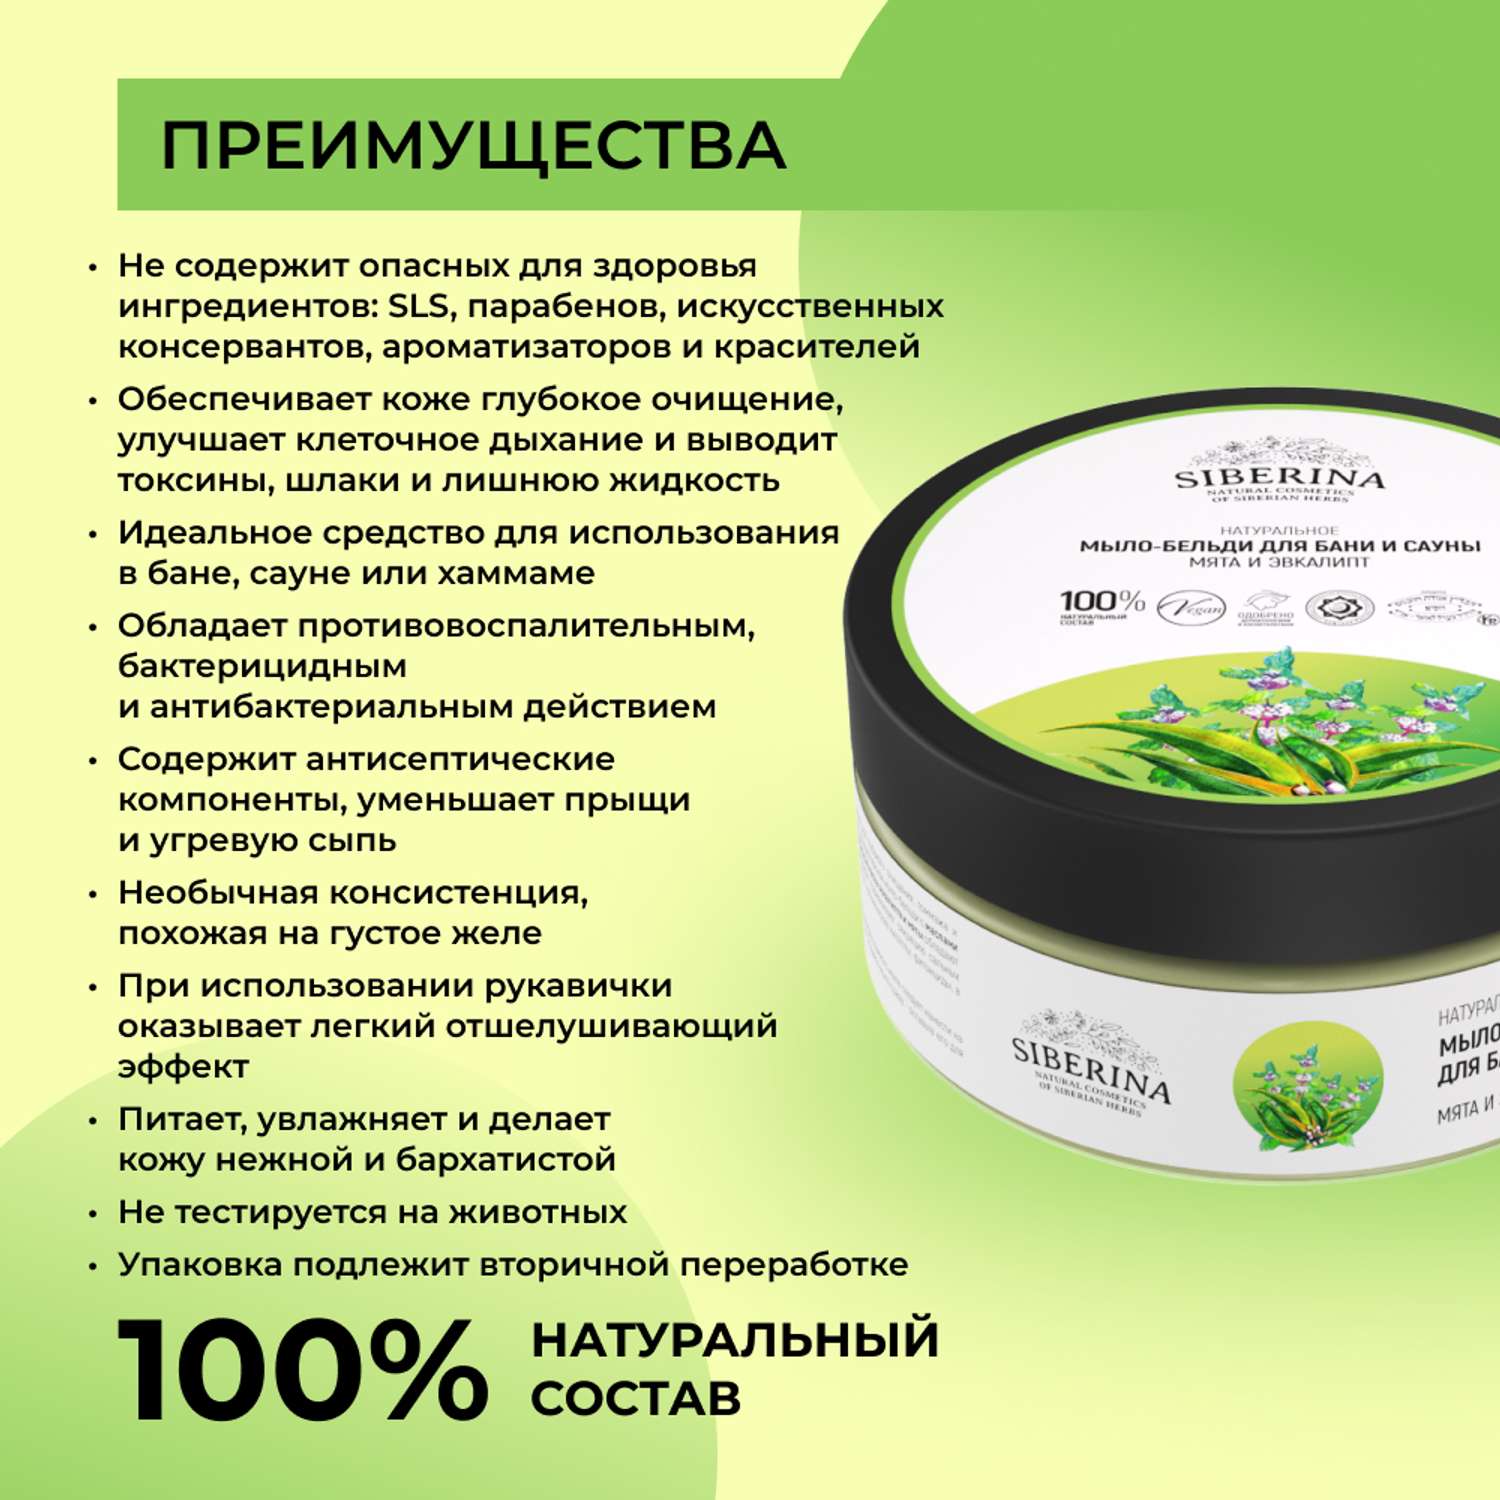 Мыло-бельди Siberina натуральное «Мята и эвкалипт» для бани и сауны 170 г - фото 3